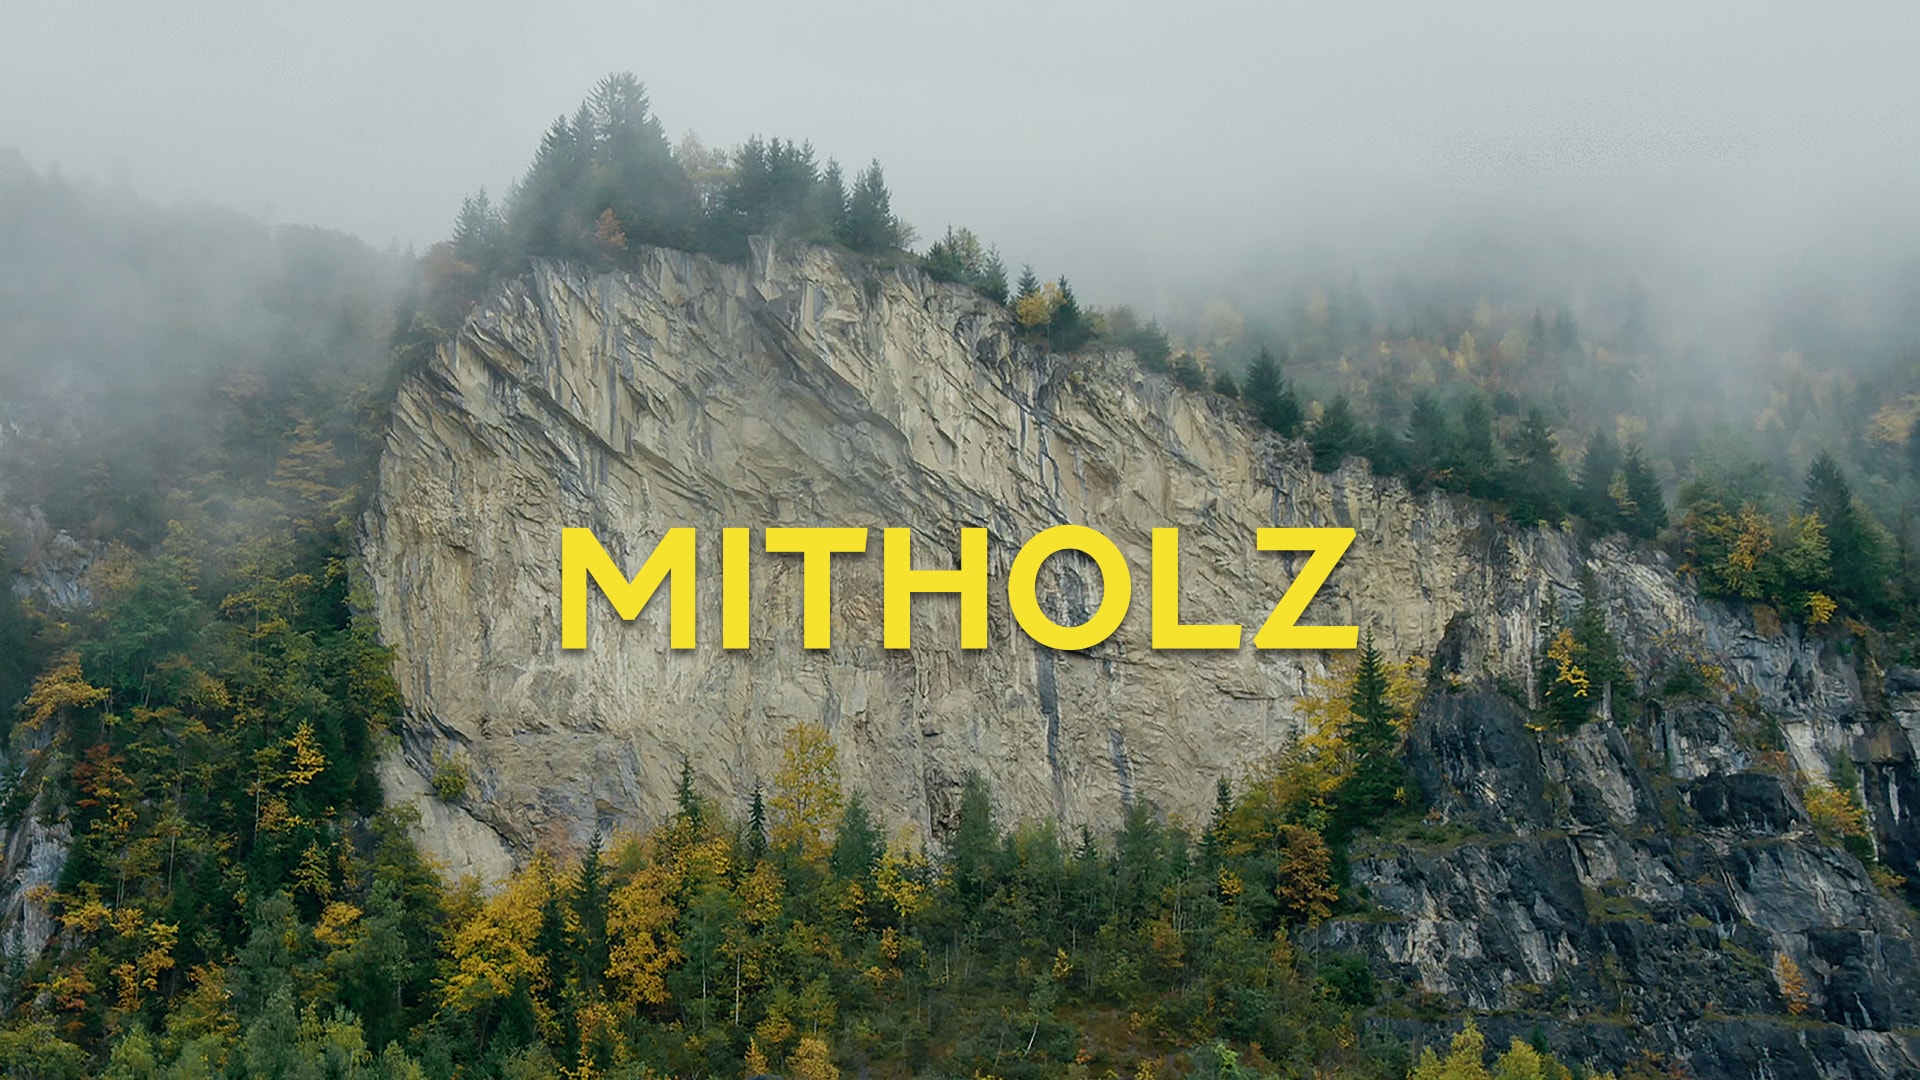 Mitholz - Die Explosiven Hinterlassenschaften der Armee